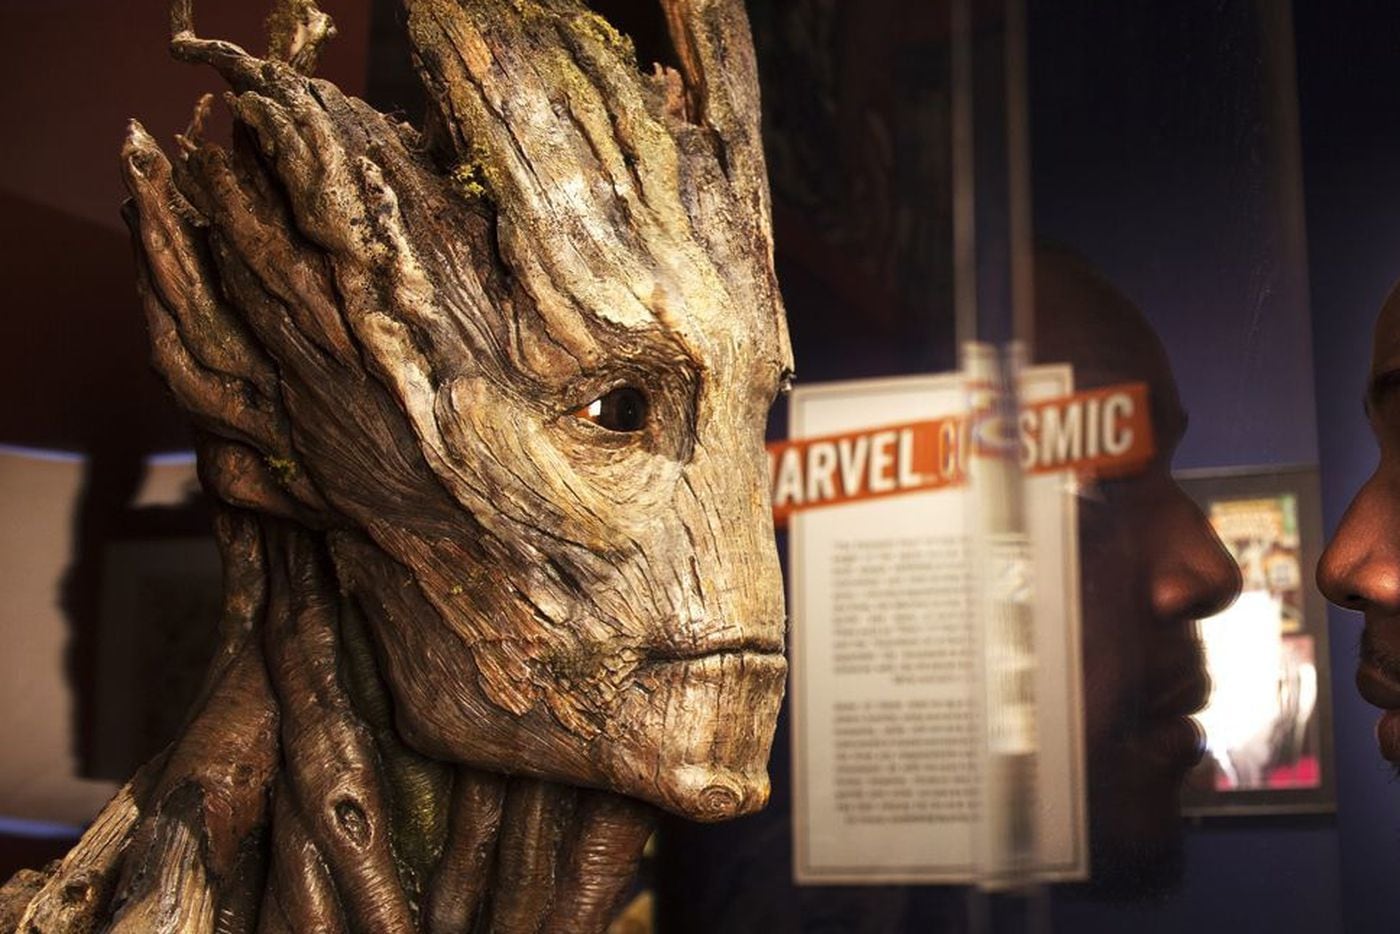 Groot is voiced by Vin Diesel.